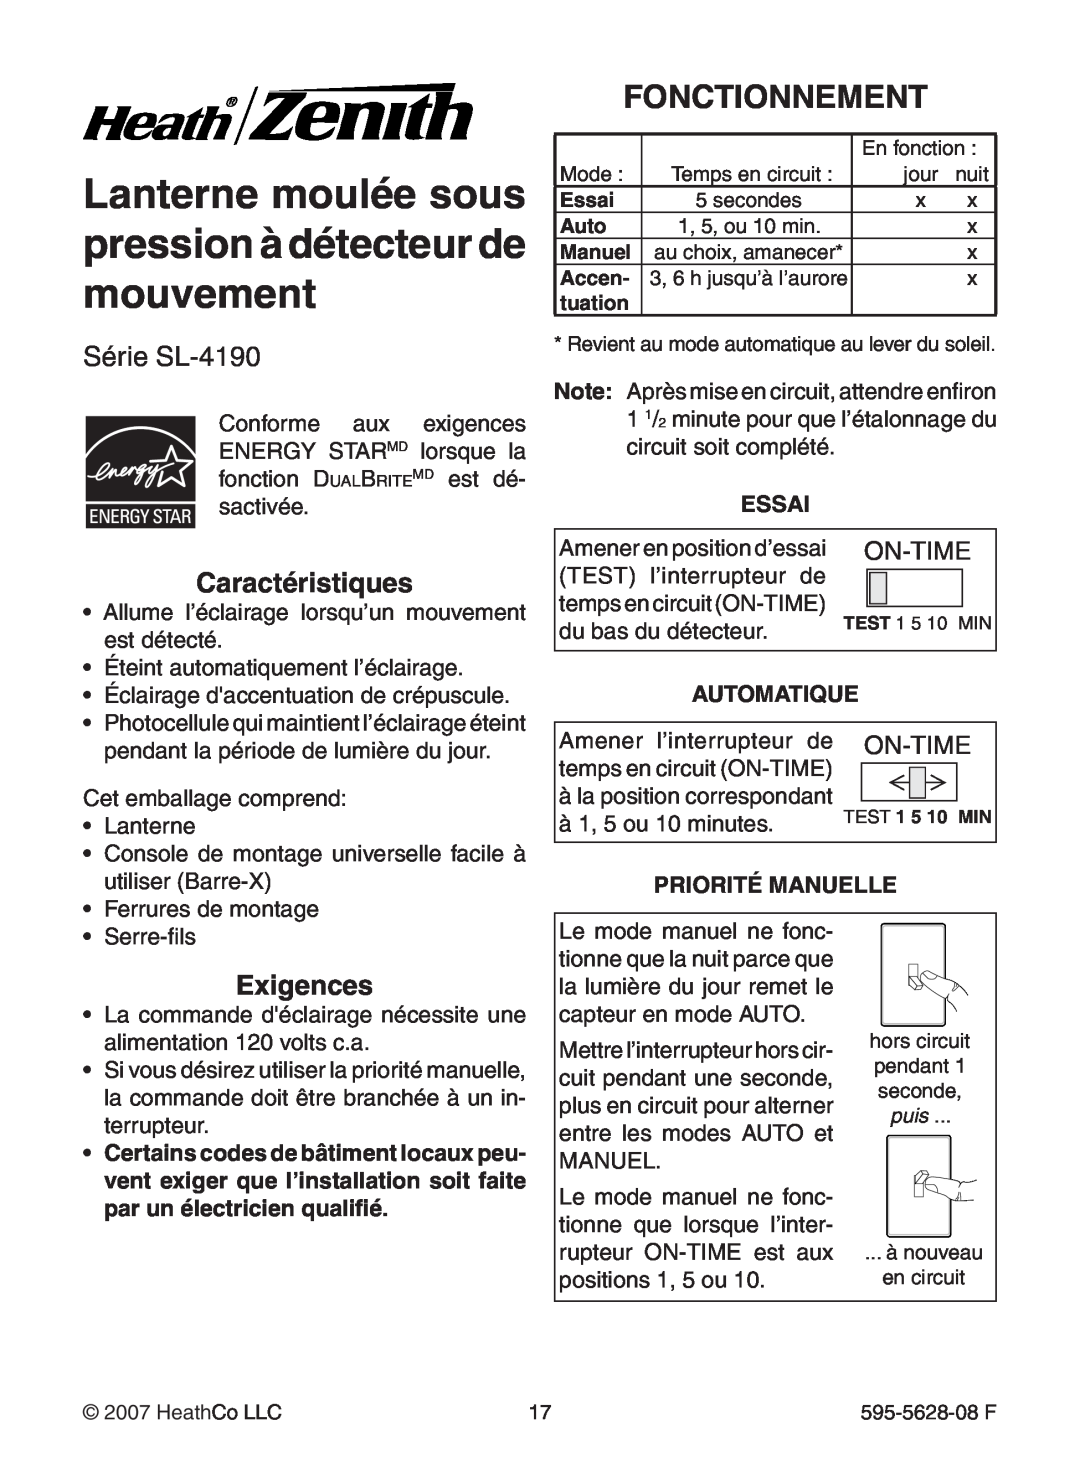 Heath Zenith SL-4190 Series manual Fonctionnement, Série SL-4190, Caractéristiques, Exigences, Essai, Automatique, On-Time 